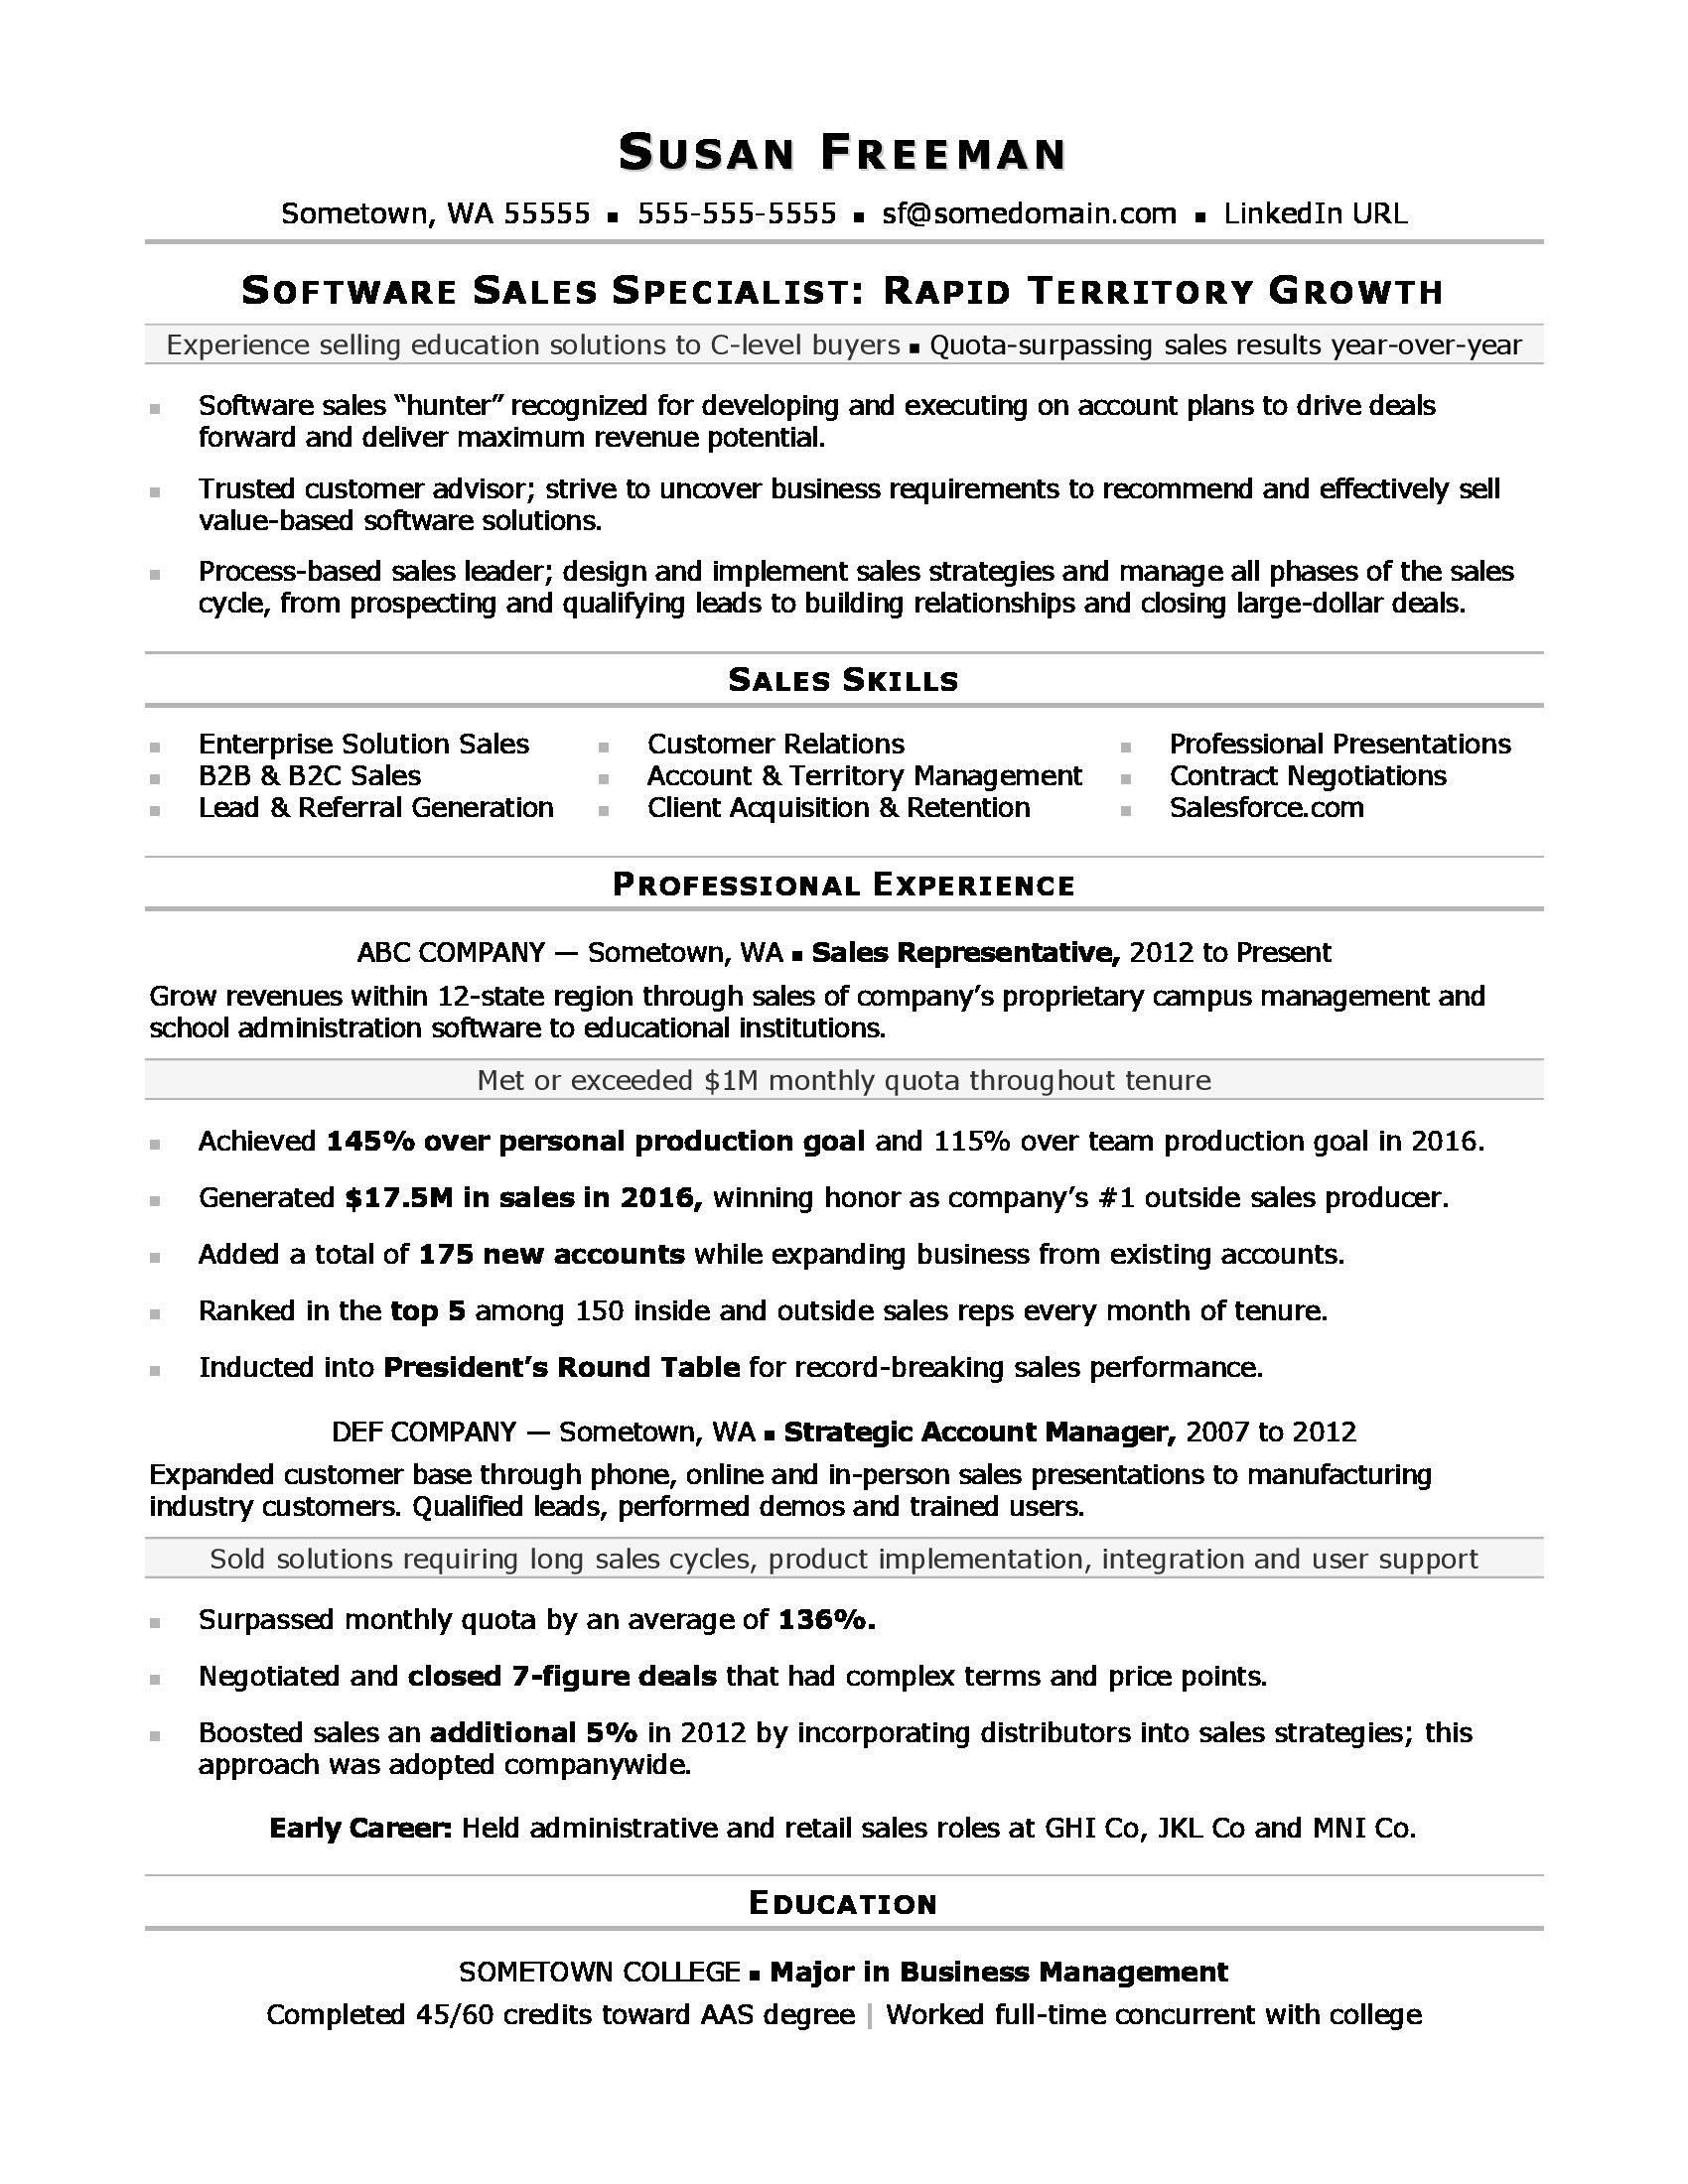 Sample Resume for Inside Sales Position Sales associate Resume Monster.com